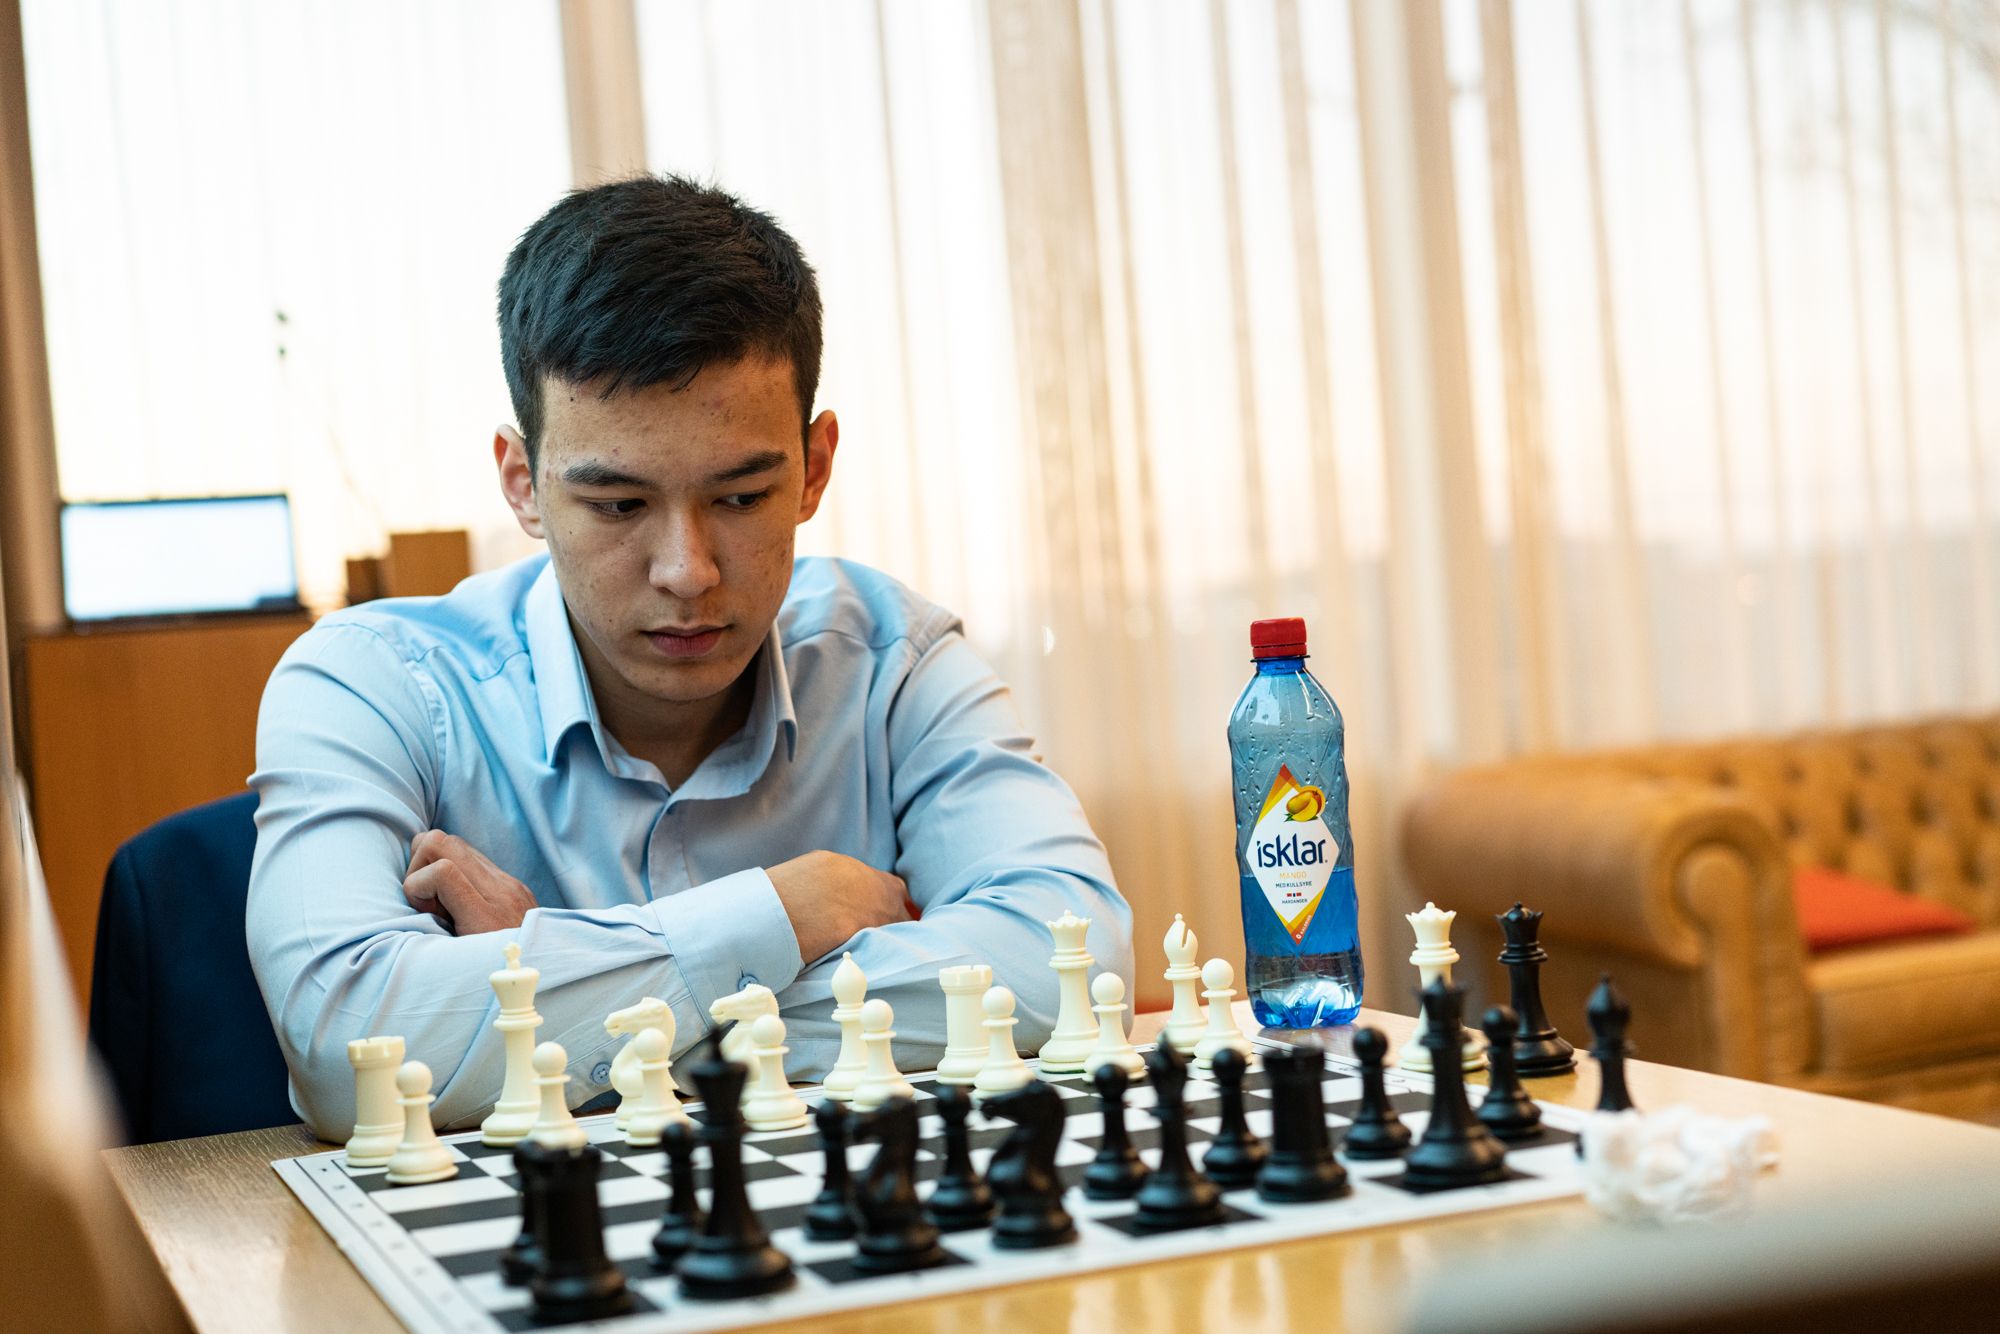 Has Magnus Carlsen checkmated himself? – DW – 12/27/2022